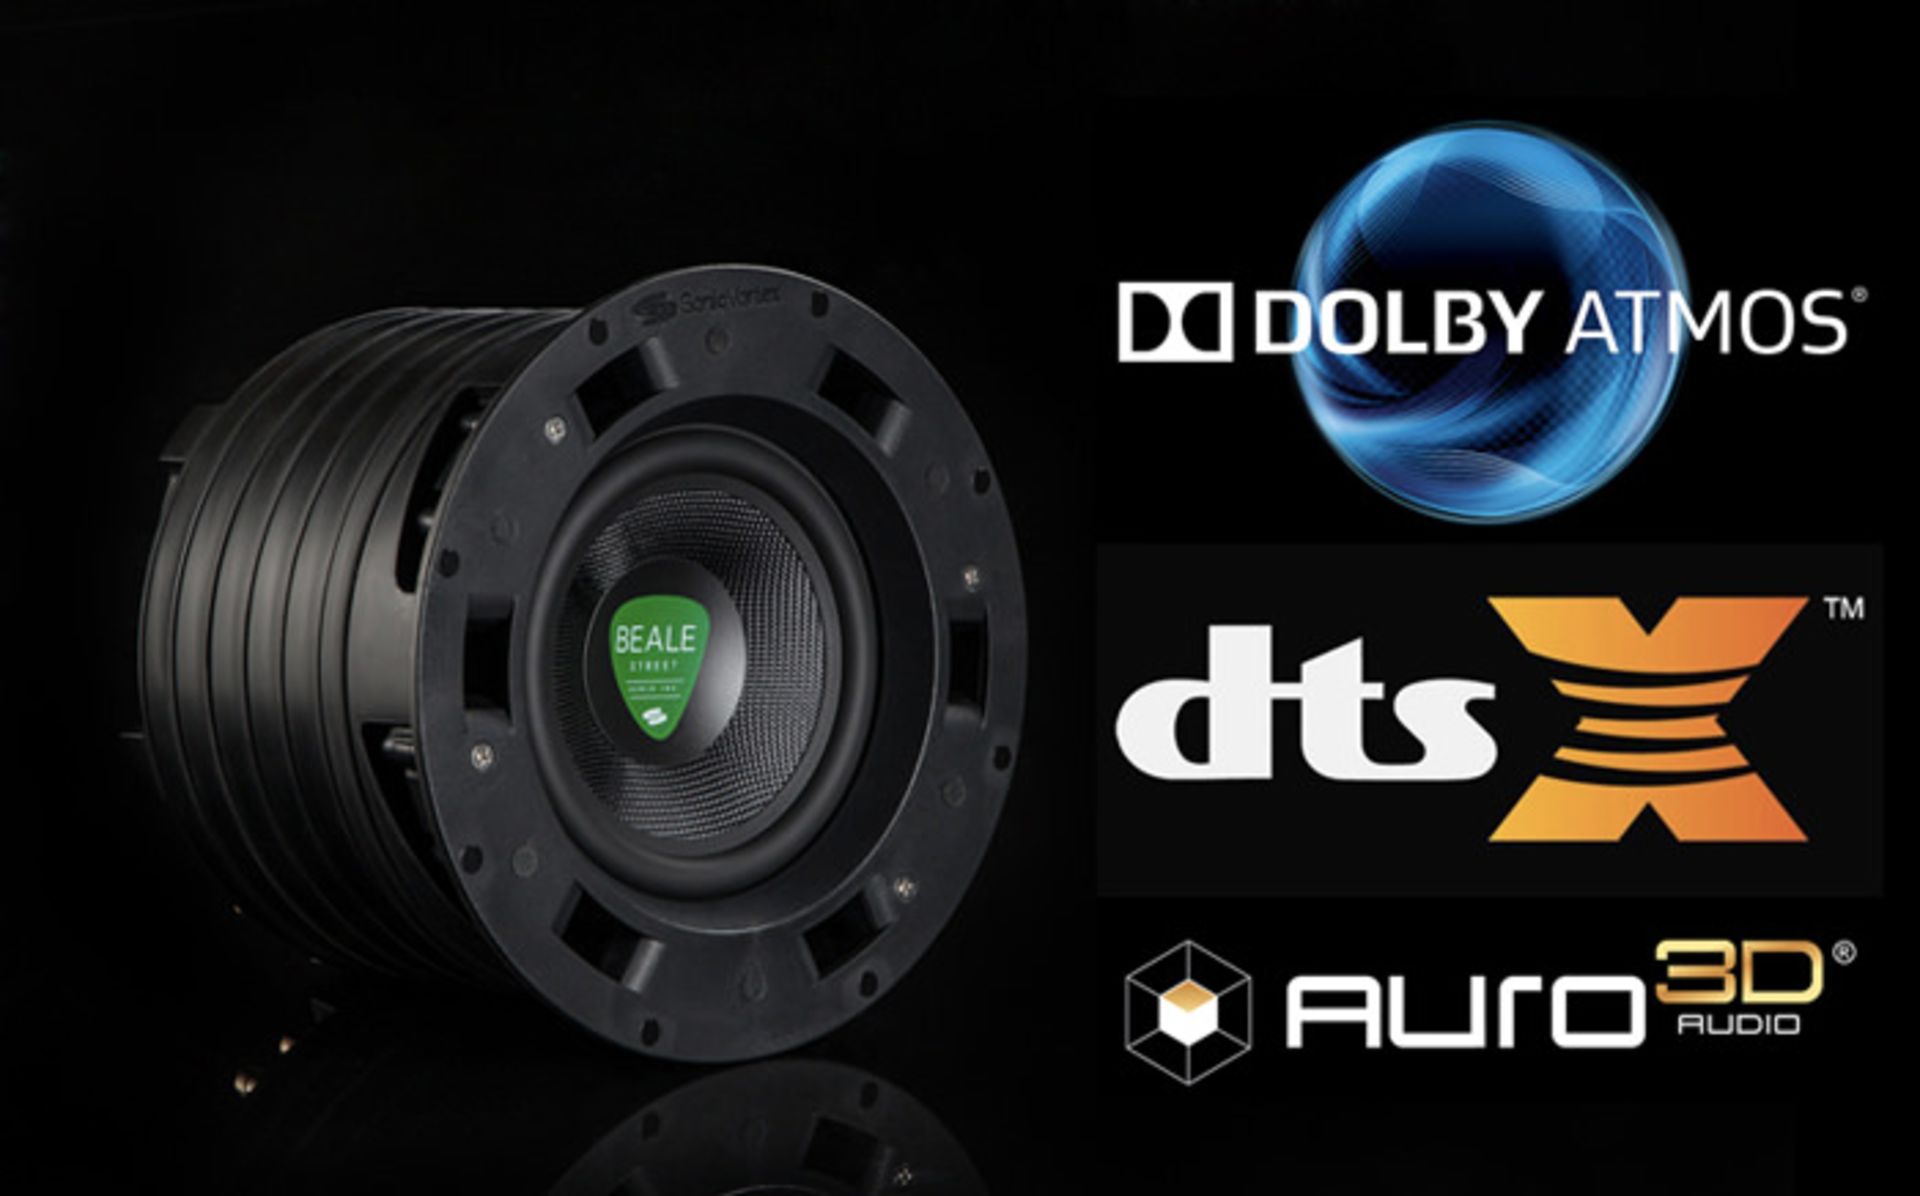 مقایسه ی دالبی اتموس، Auro 3D و DTS X